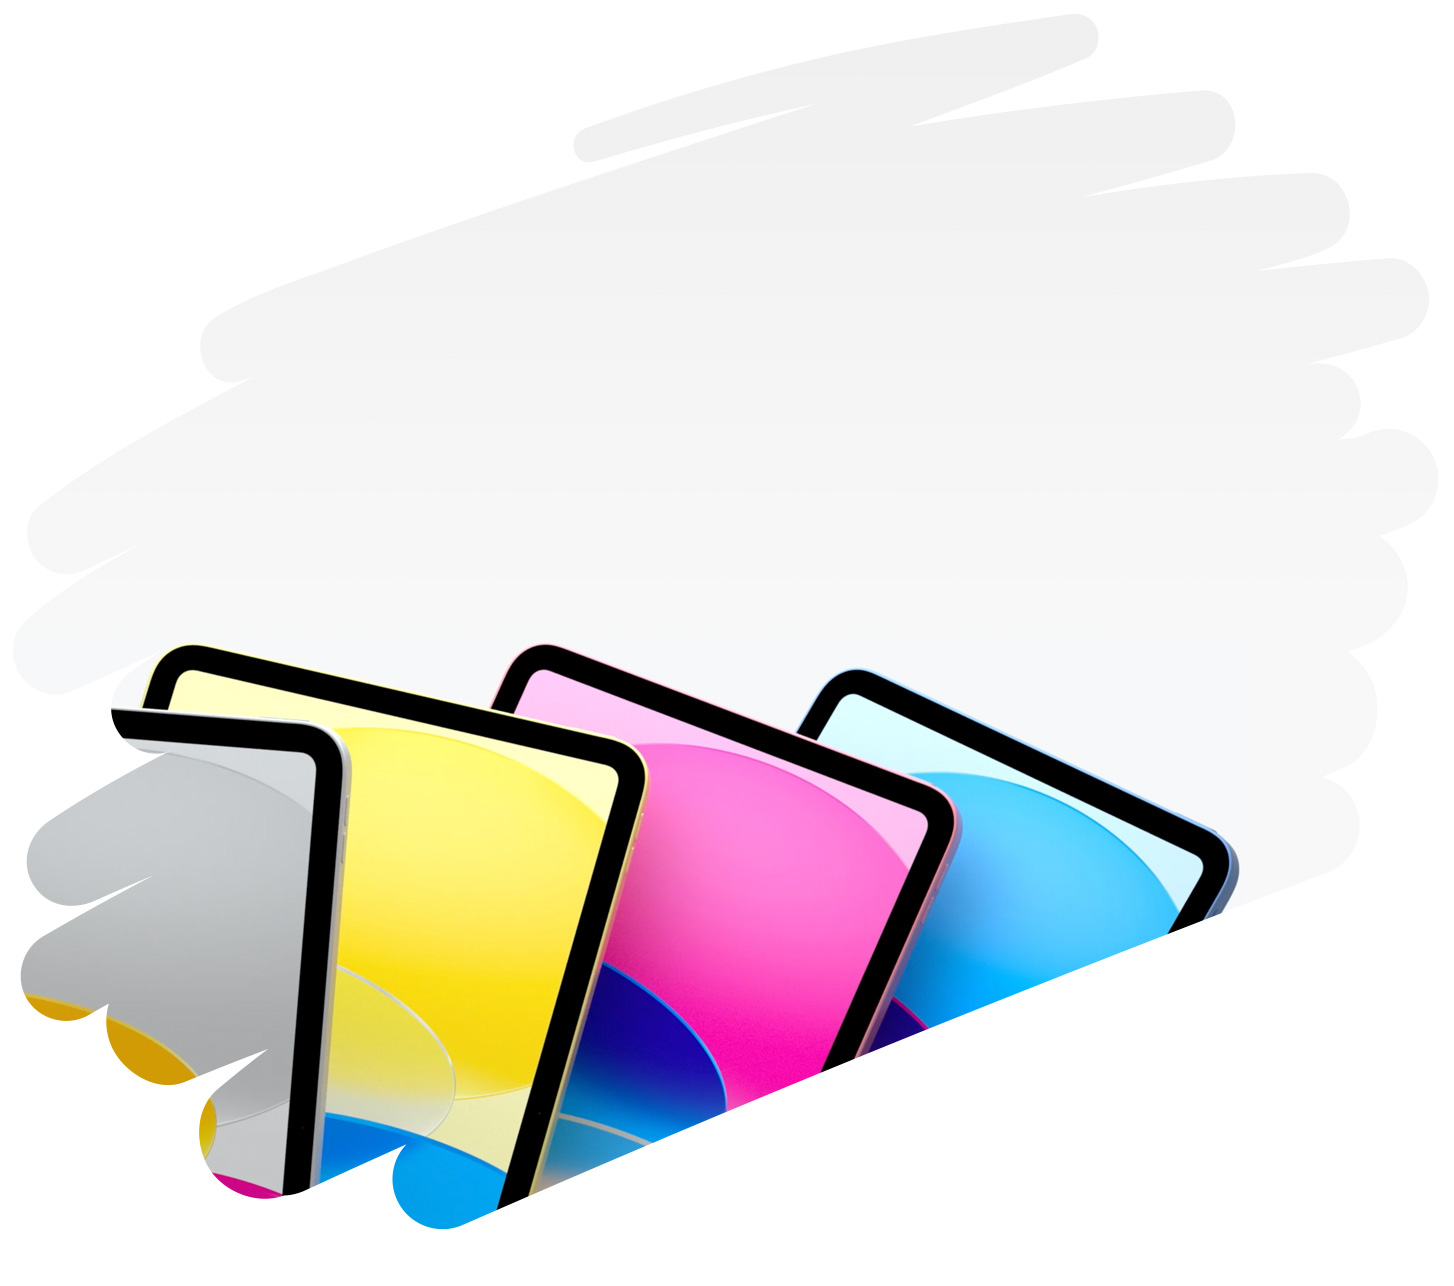 頁面展示多款色彩繽紛的 iPad，背景是以畫筆來回畫的巨大筆觸。